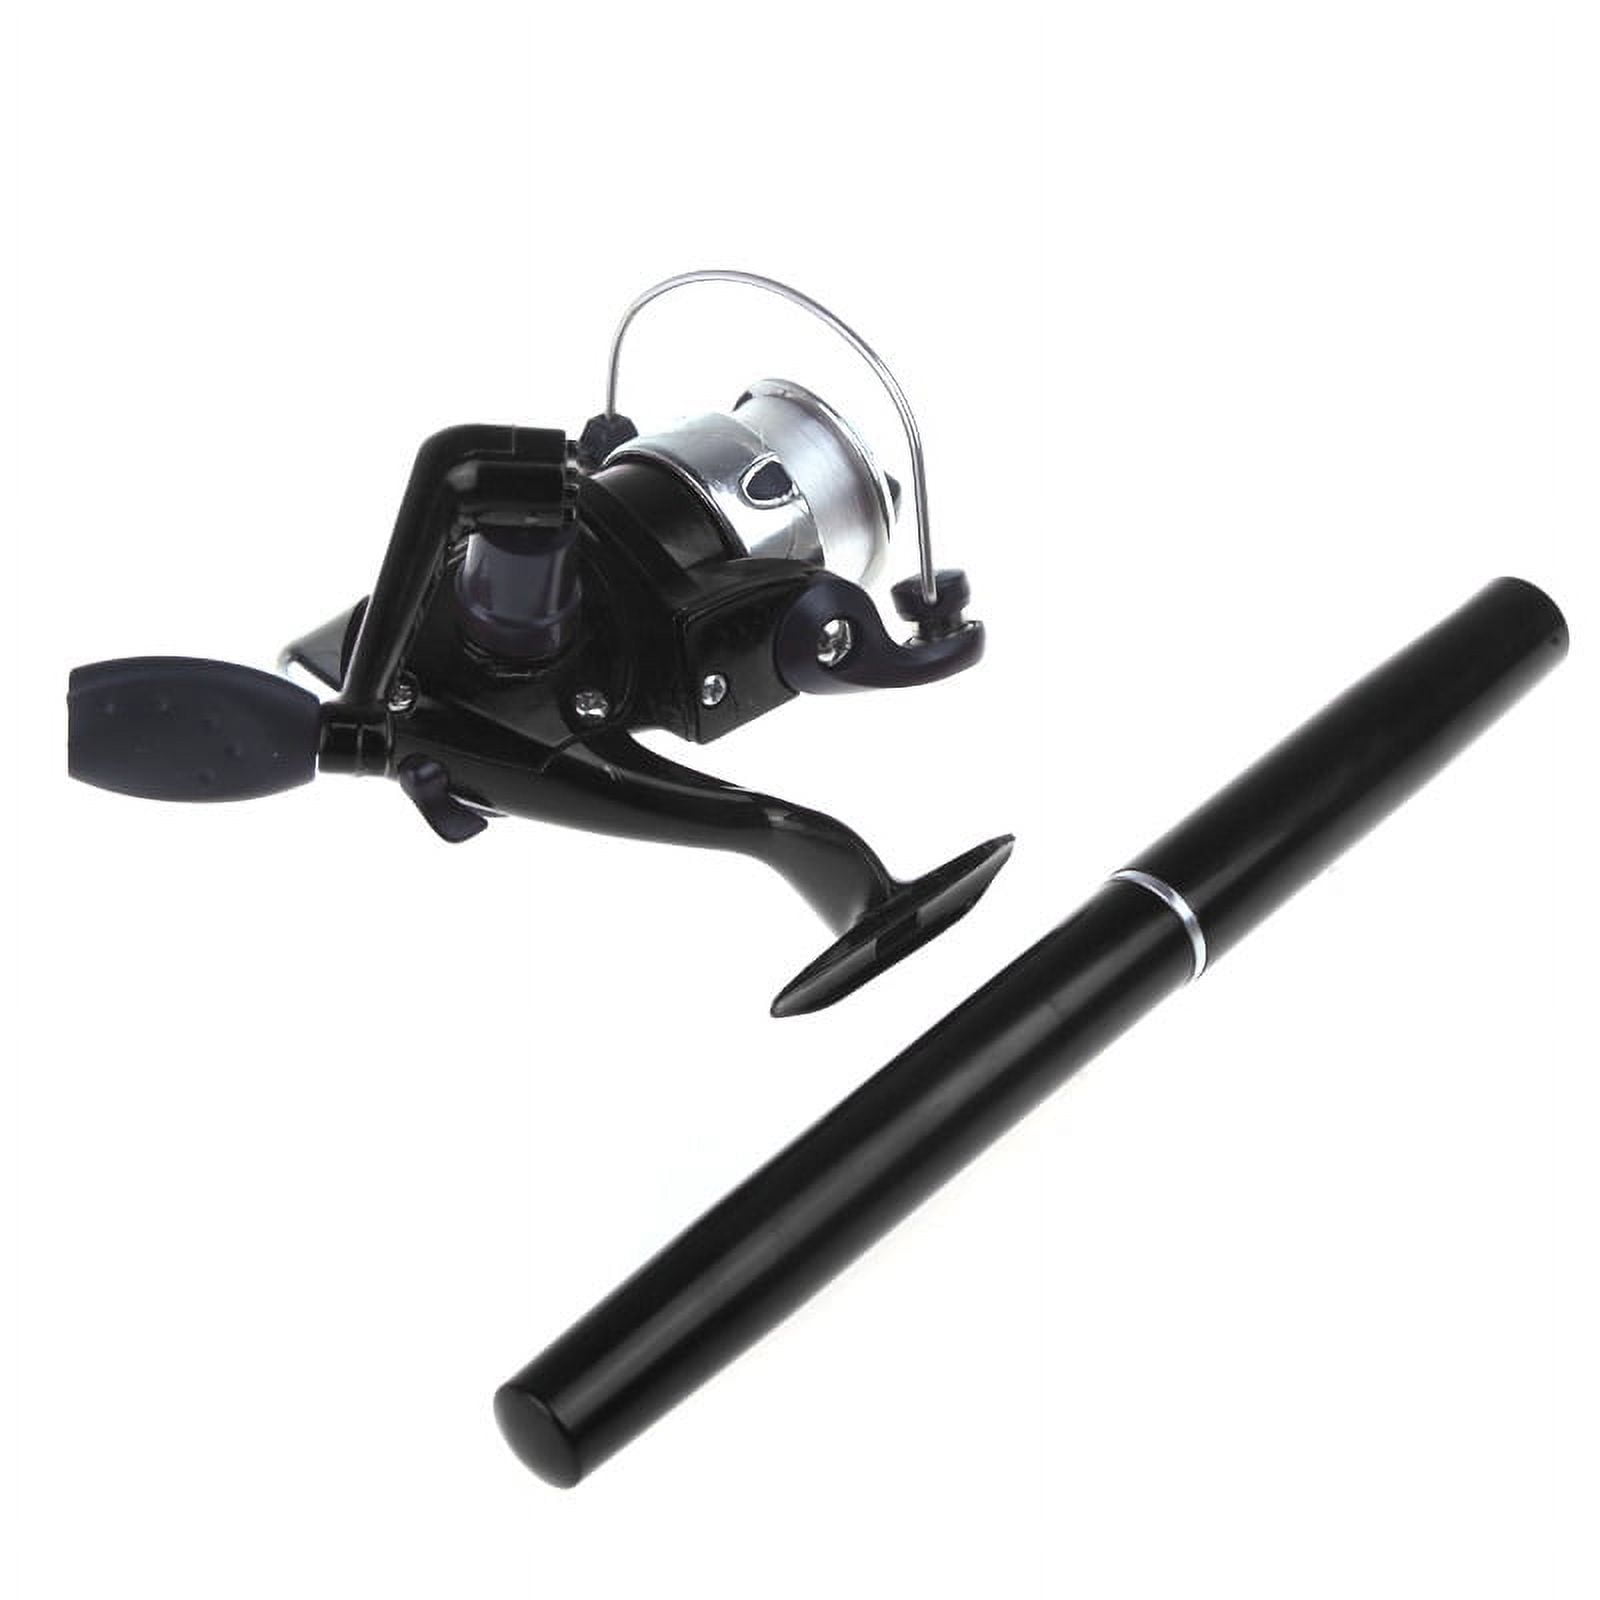 Mini Aluminum Pocket Pen Fishing Rod Pole + Reel, Size: 24.5, Black